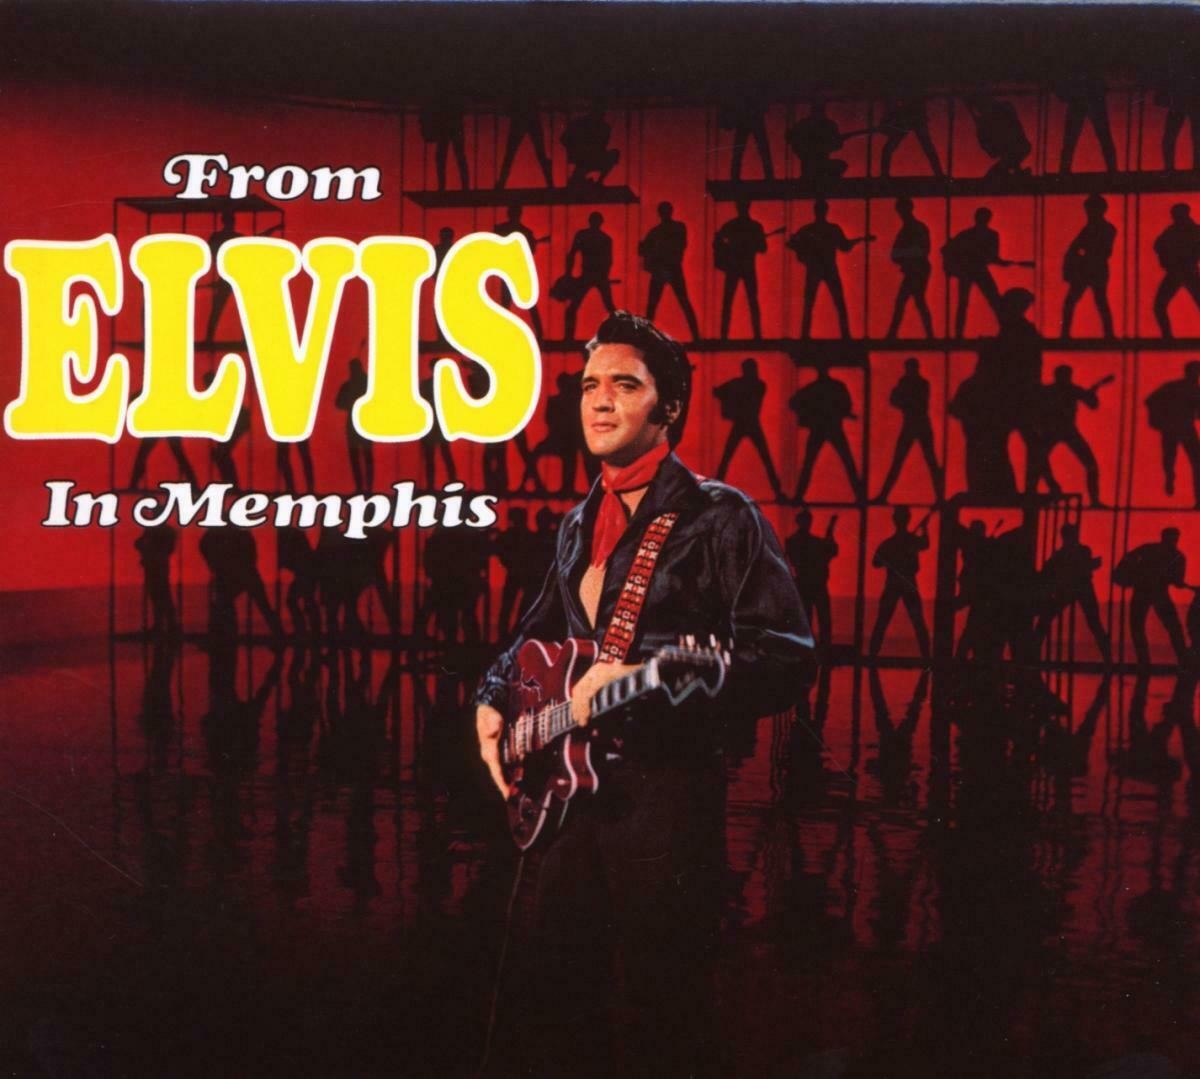 Capa do disco From Elvis in Memphis (Foto: Divulgação)